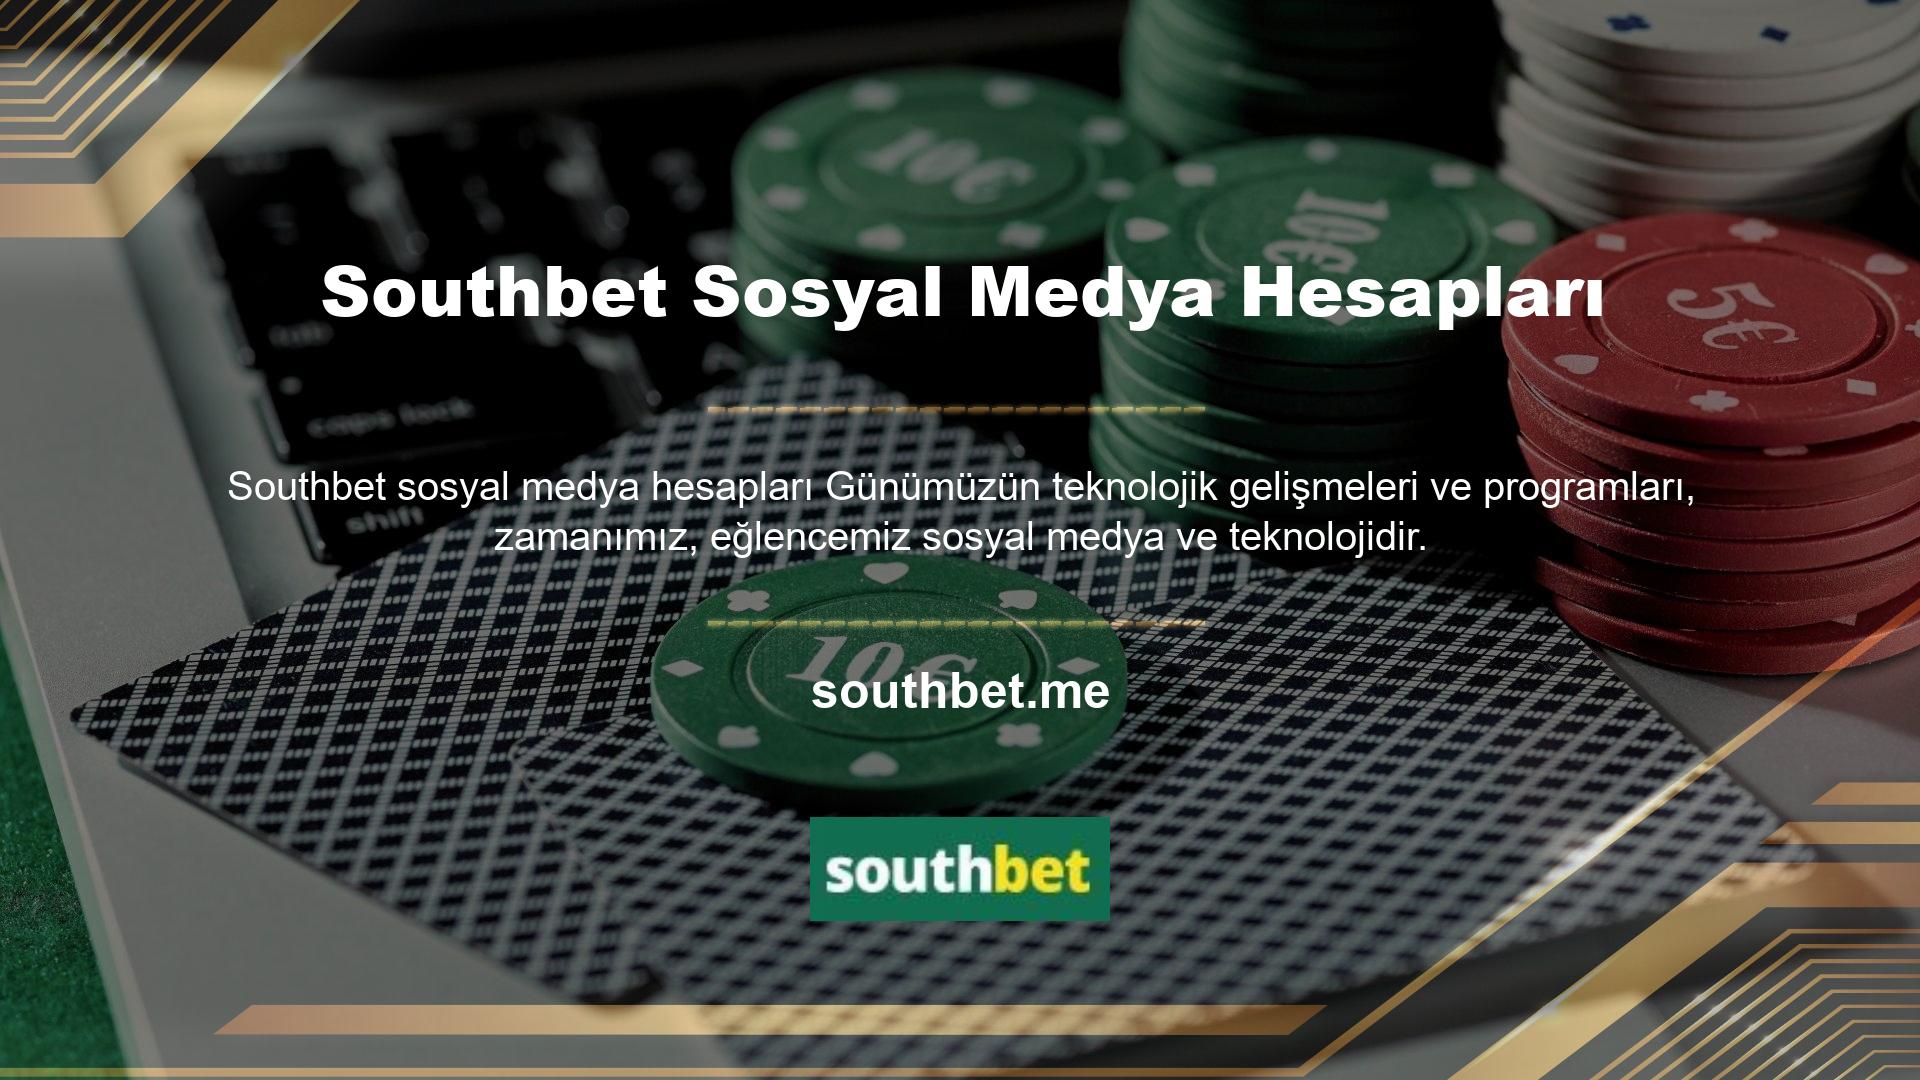 Southbet, sosyal medya hesapları aracılığıyla oyunculara bilgi ve eğlence sağlar